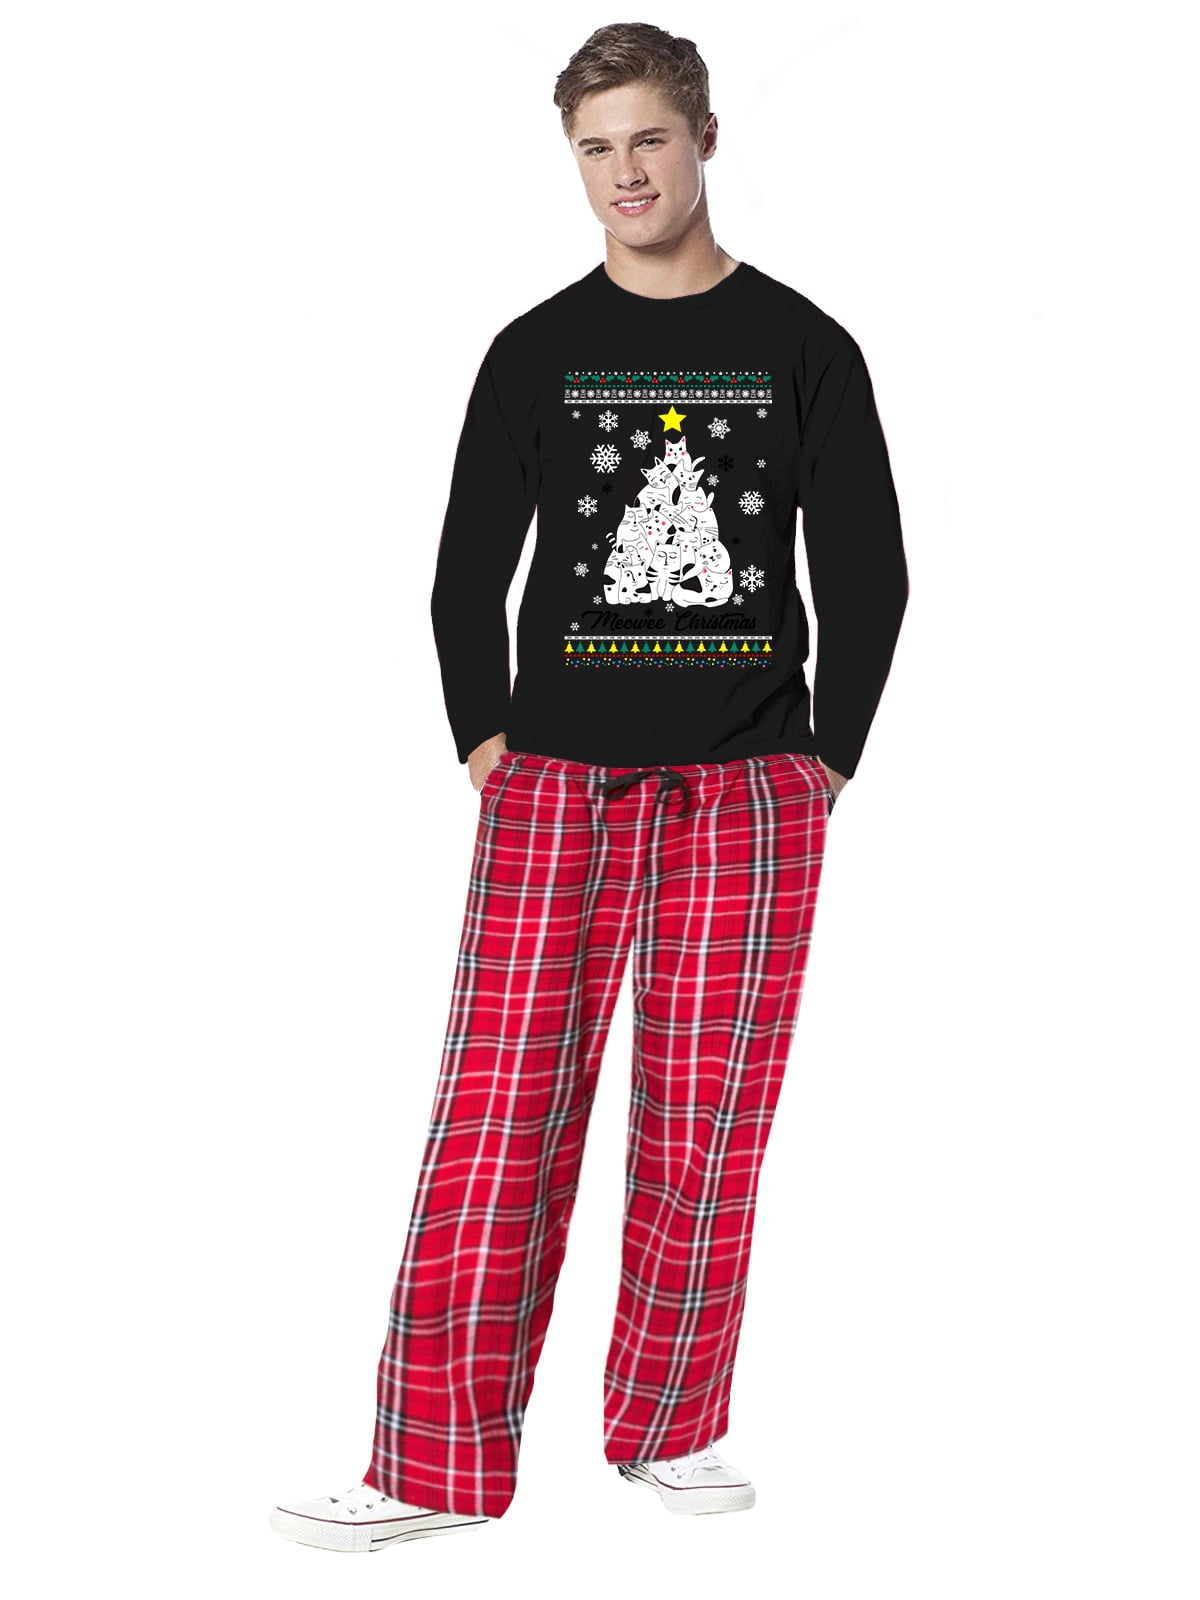 Family Christmas Pajamas for Men Meowee Cat Xmas Tree Sleepwear Mens Pajama Sets